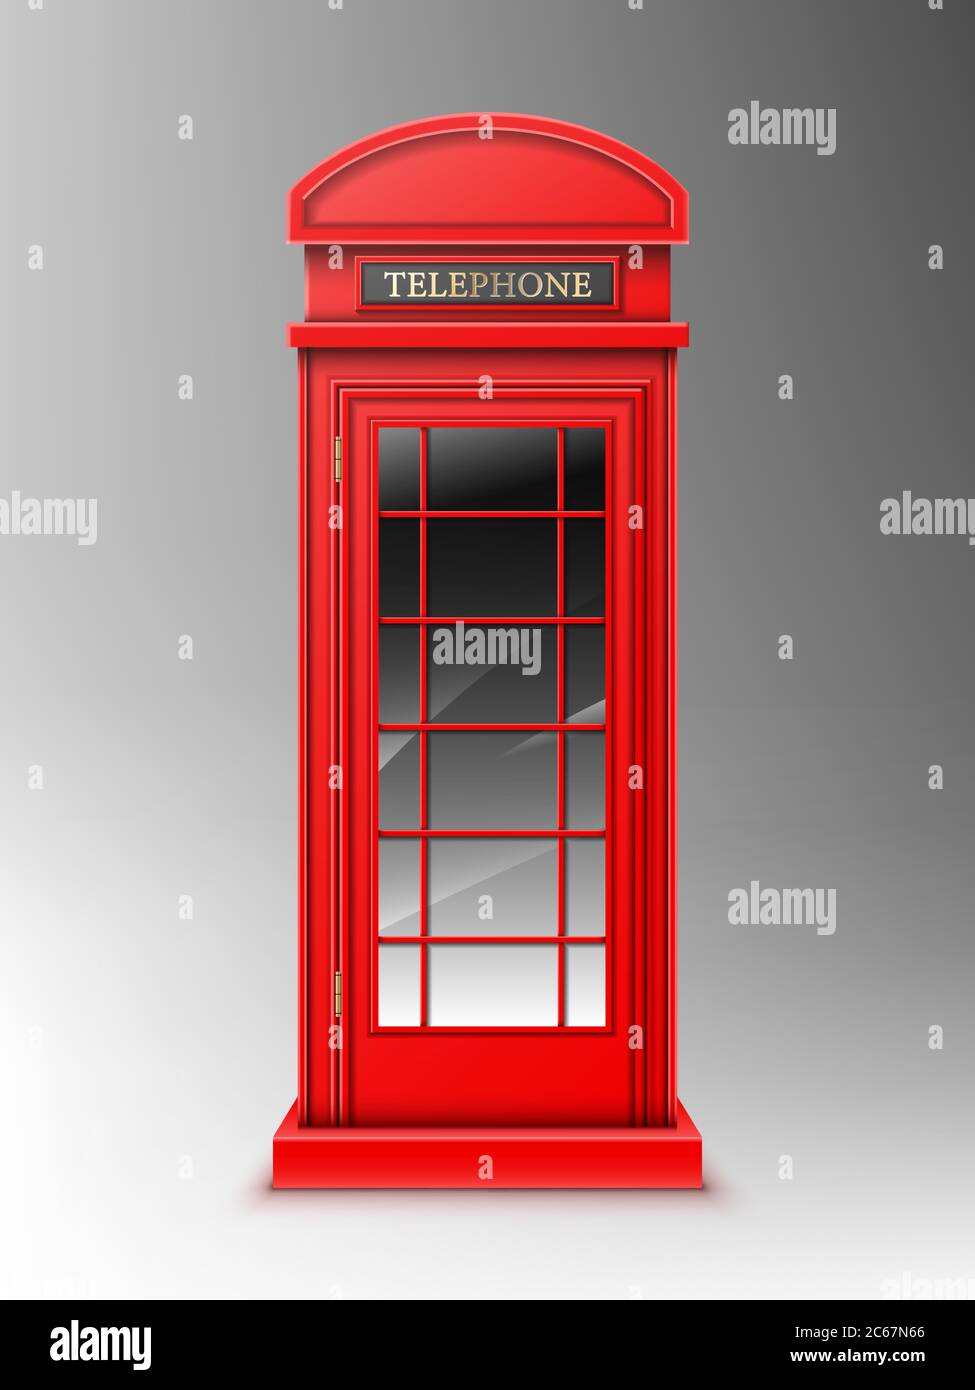 Cabina de teléfono rojo vintage, clásica caja de teléfono retro de Londres. Cabina pública cercana para charlas y comunicación, Reino Unido diseño aislado sobre fondo gris. Ilustración de vectores 3d realista Ilustración del Vector